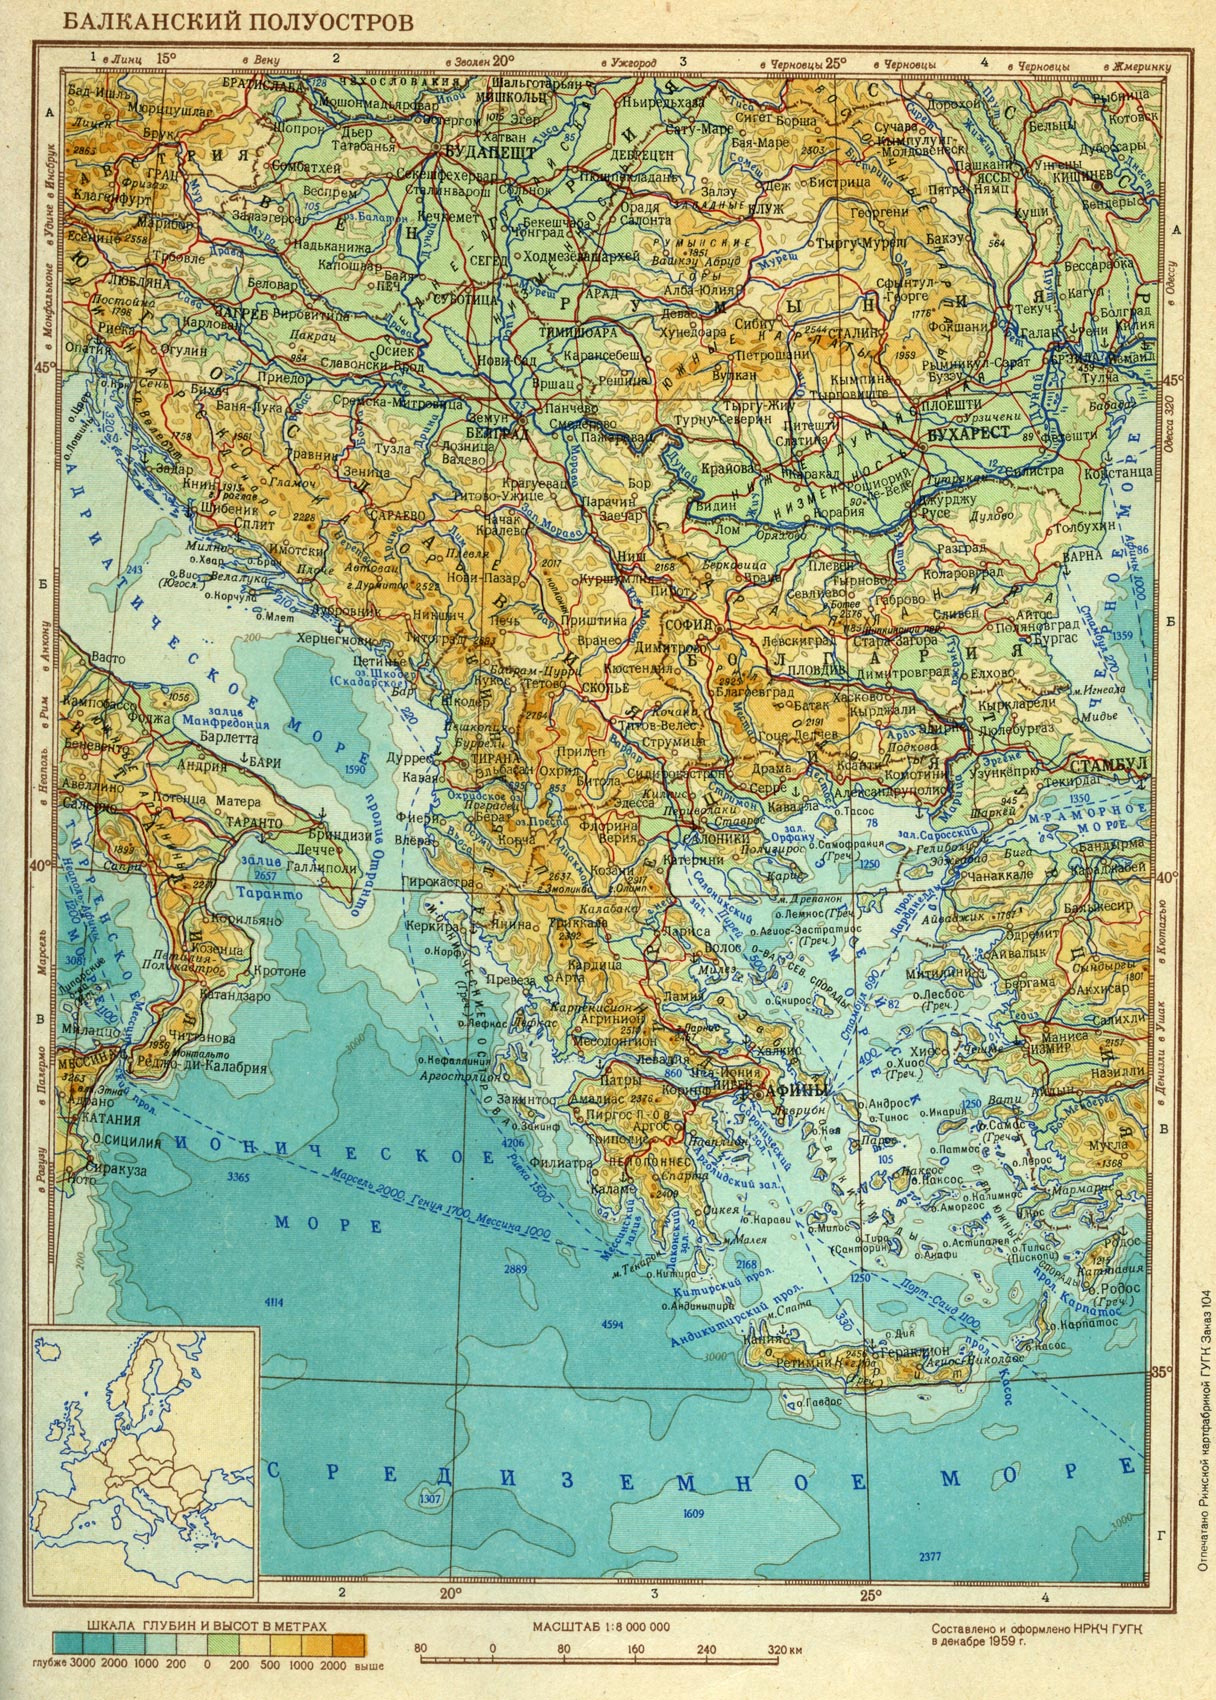 Балканский полуостров или Балканы